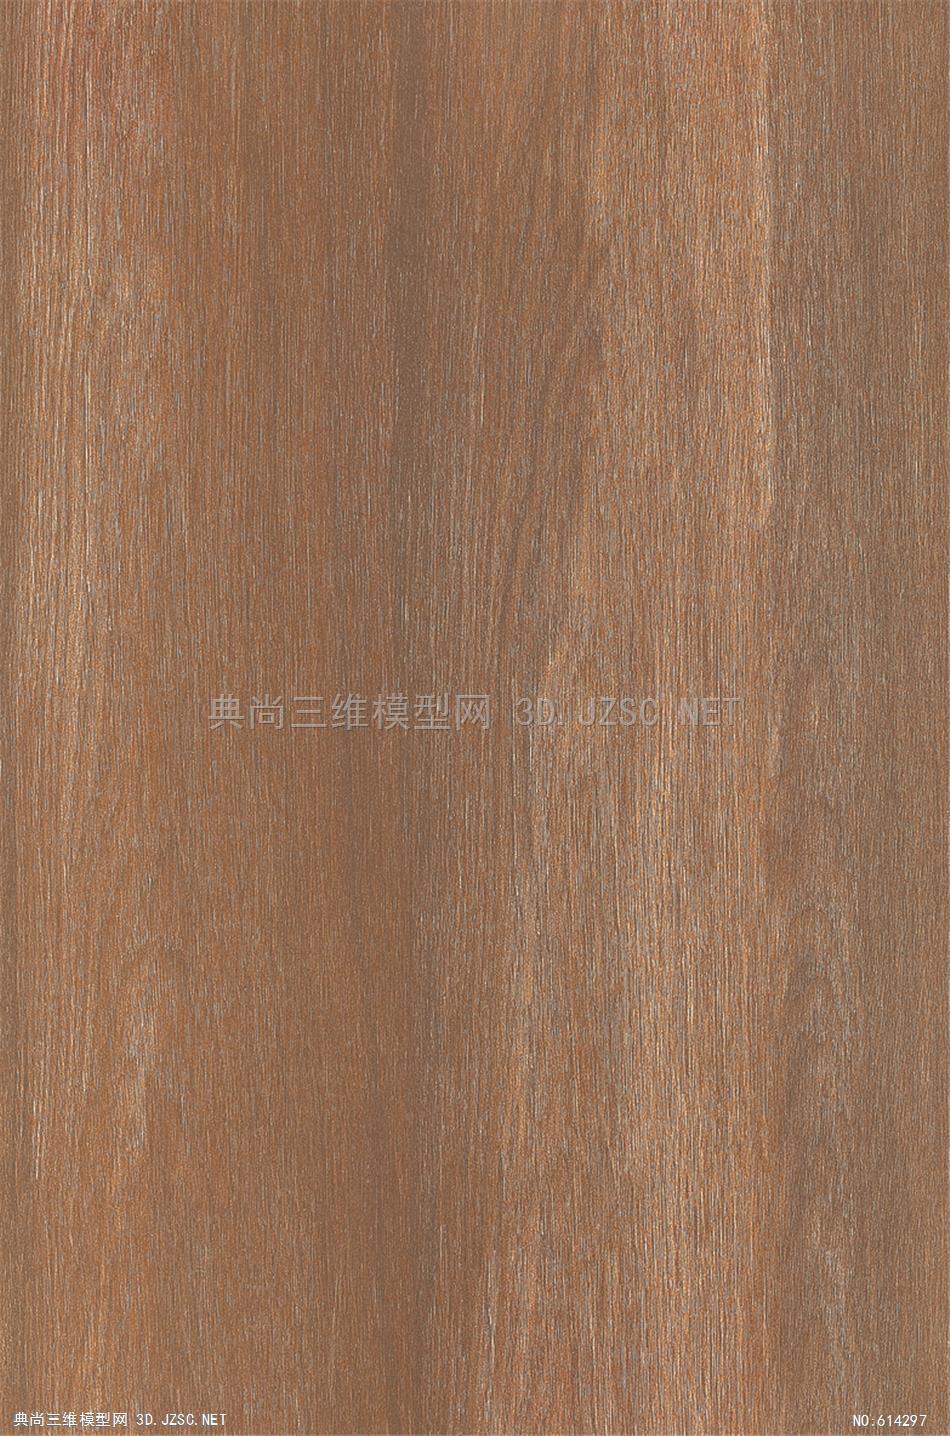 木饰面 木纹 木材  高清材质贴图 (266)